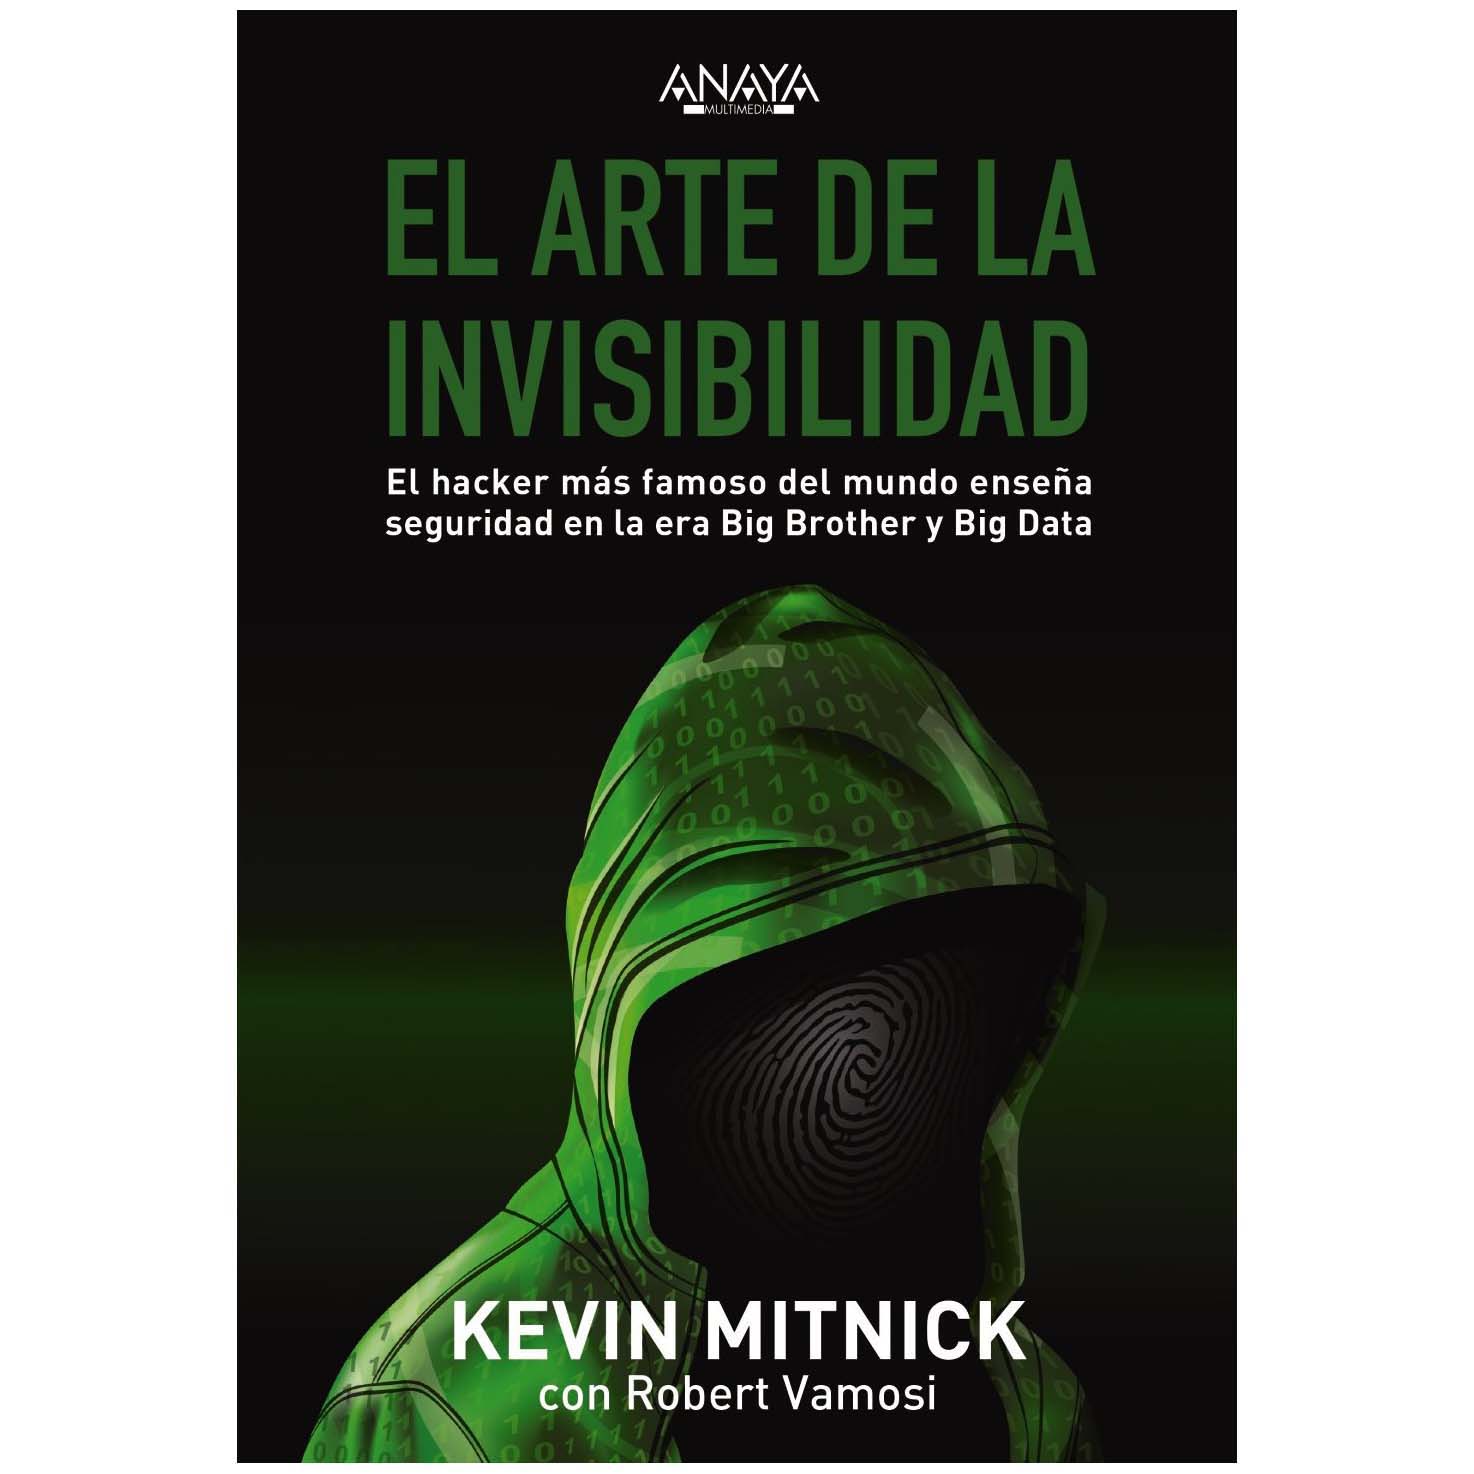 LIBRO EL ARTE DE LA INVISIBILIDAD (KEVIN MITNICK)